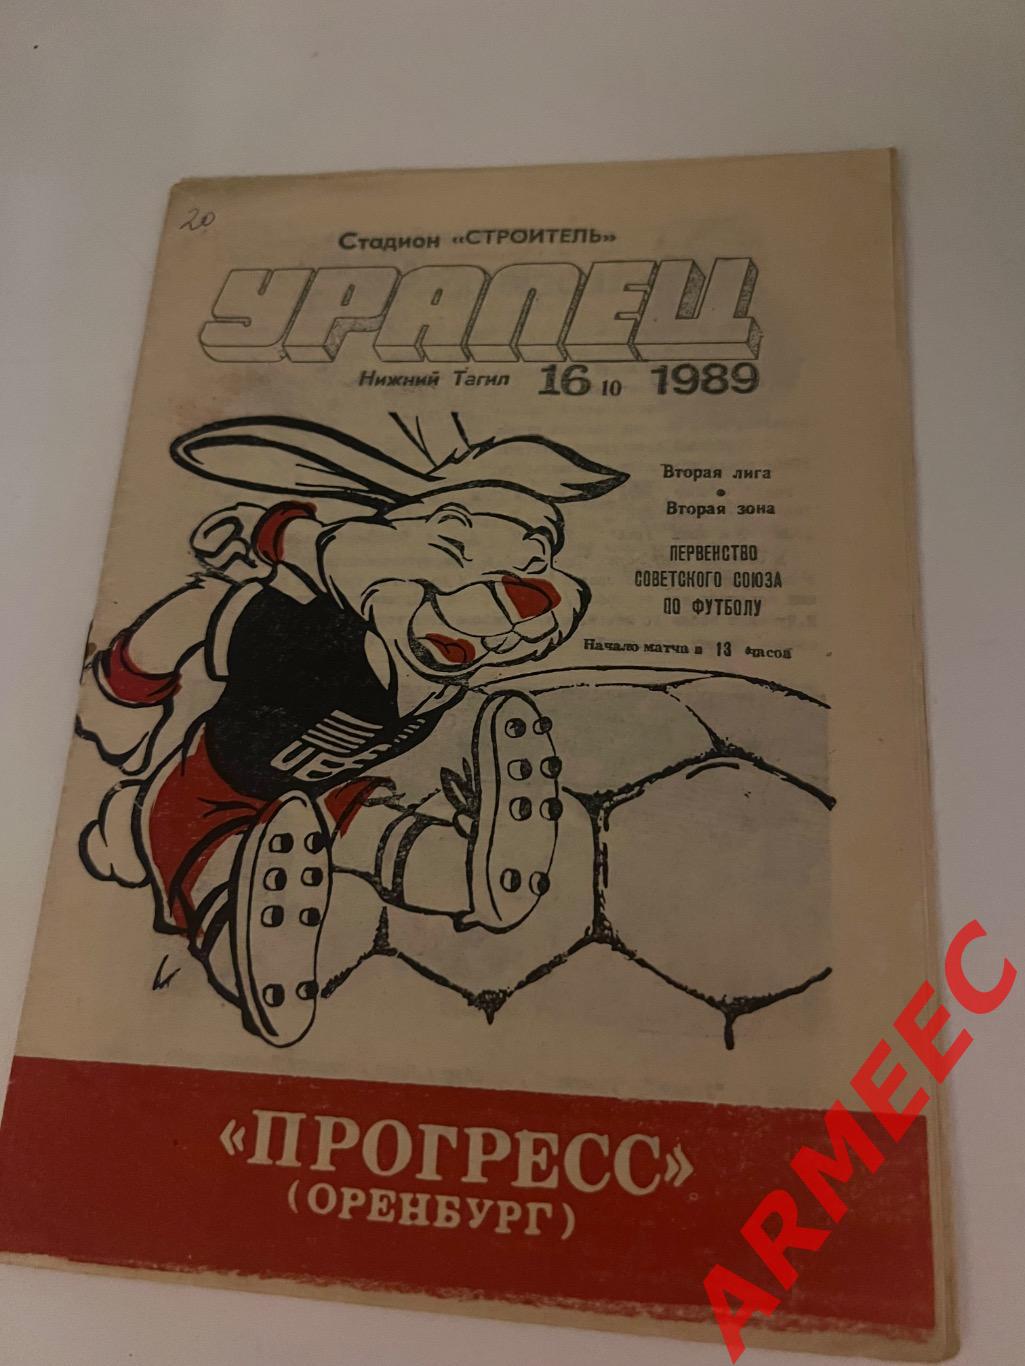 Уралец (Нижний Тагил)-Прогресс (Оренбург) 16.10.1989